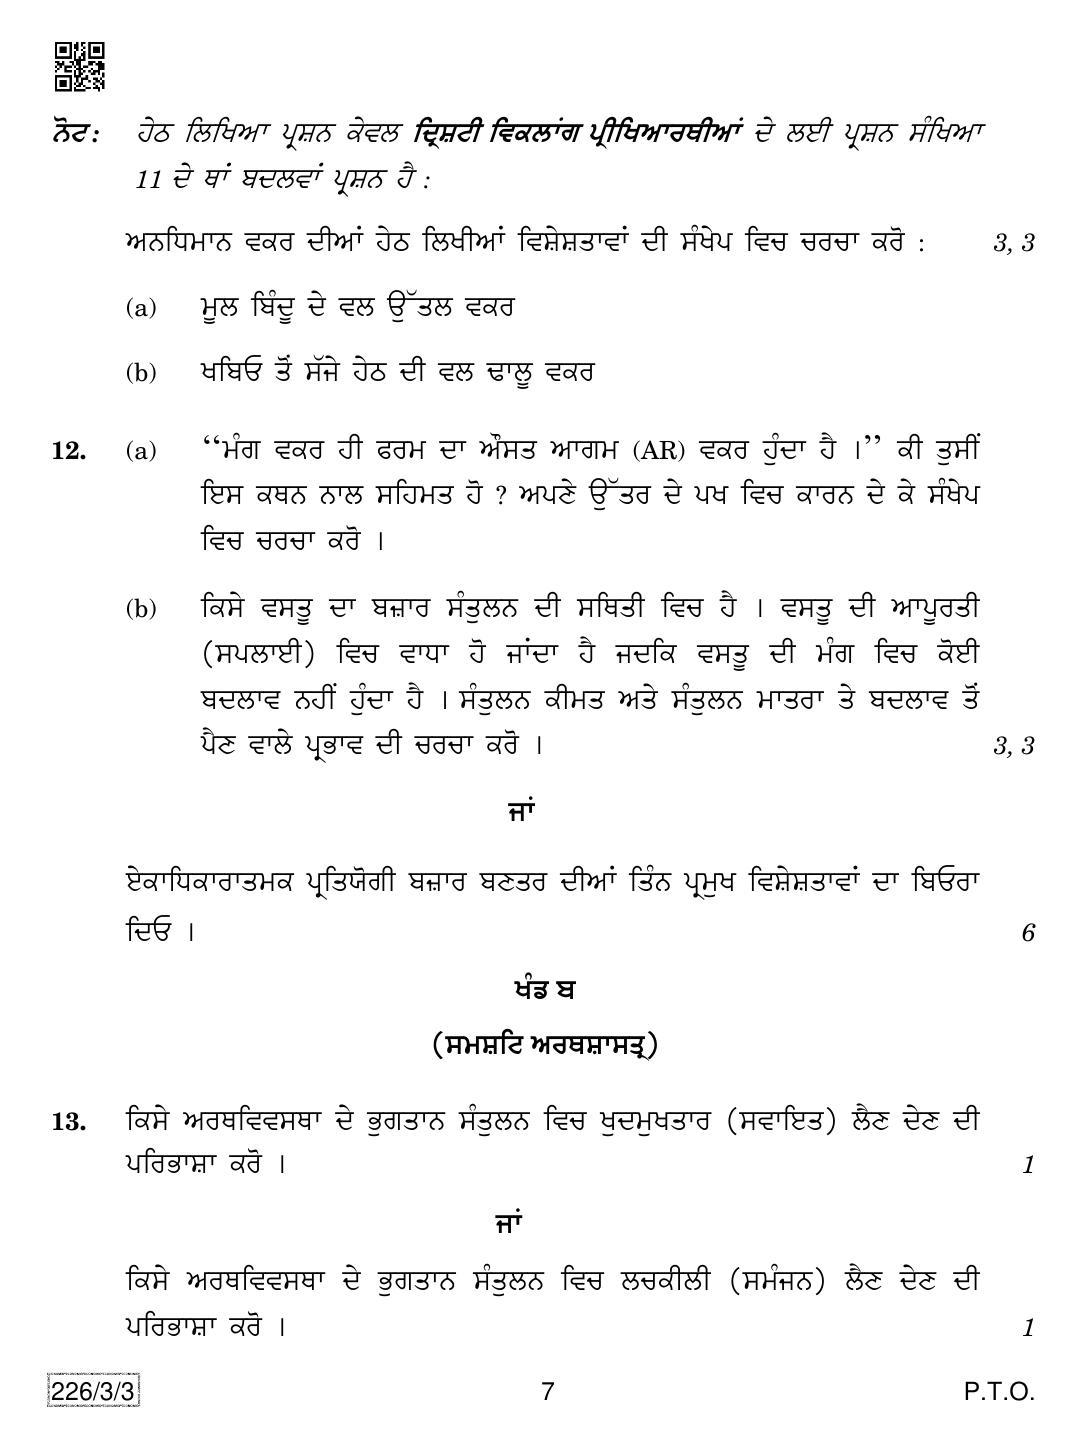 CBSE Class 12 226-3-3 Economics (Punjabi) 2019 Question Paper - Page 7